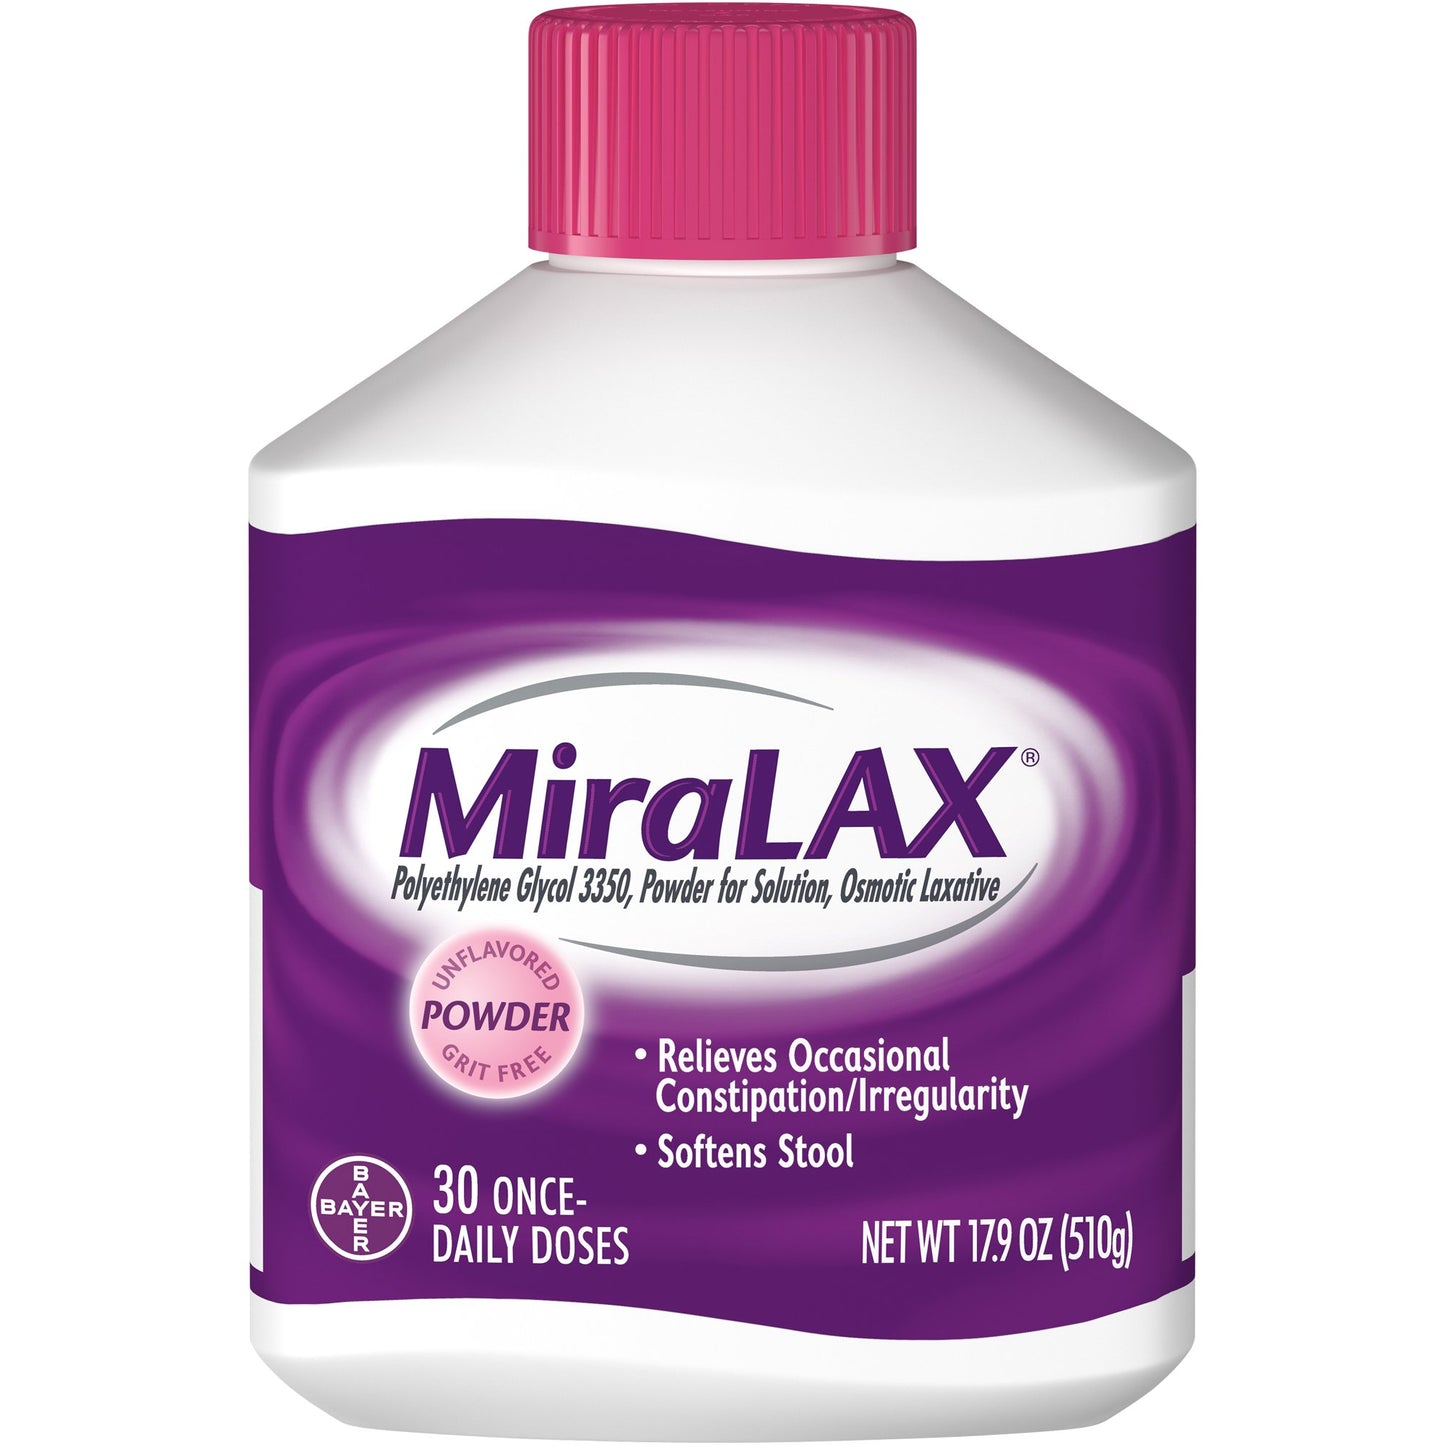 MIRALAX - E-Pharmacy Ghana